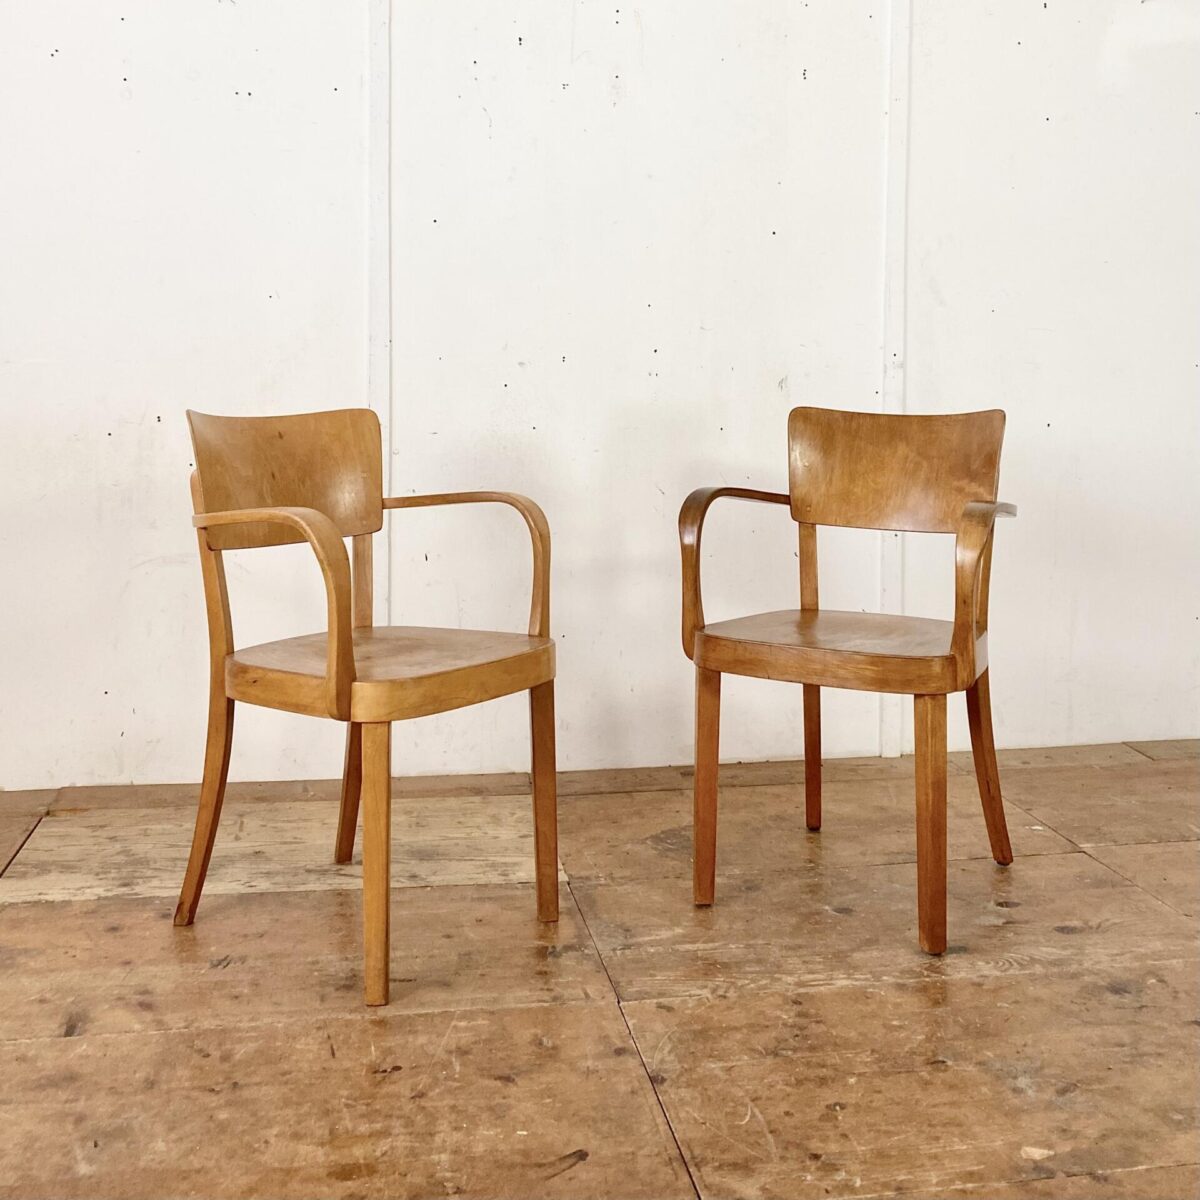 Deuxieme.shop Horgen Glarus Armlehnstuhl. Sitz und Lehne aus Birken Sperrholz, formverleimt. Die restlichen Teile sind aus Buche Vollholz, Dampfgebogen. Der Stuhl ist in stabilem Original Zustand, mit leichter Alterspatina.